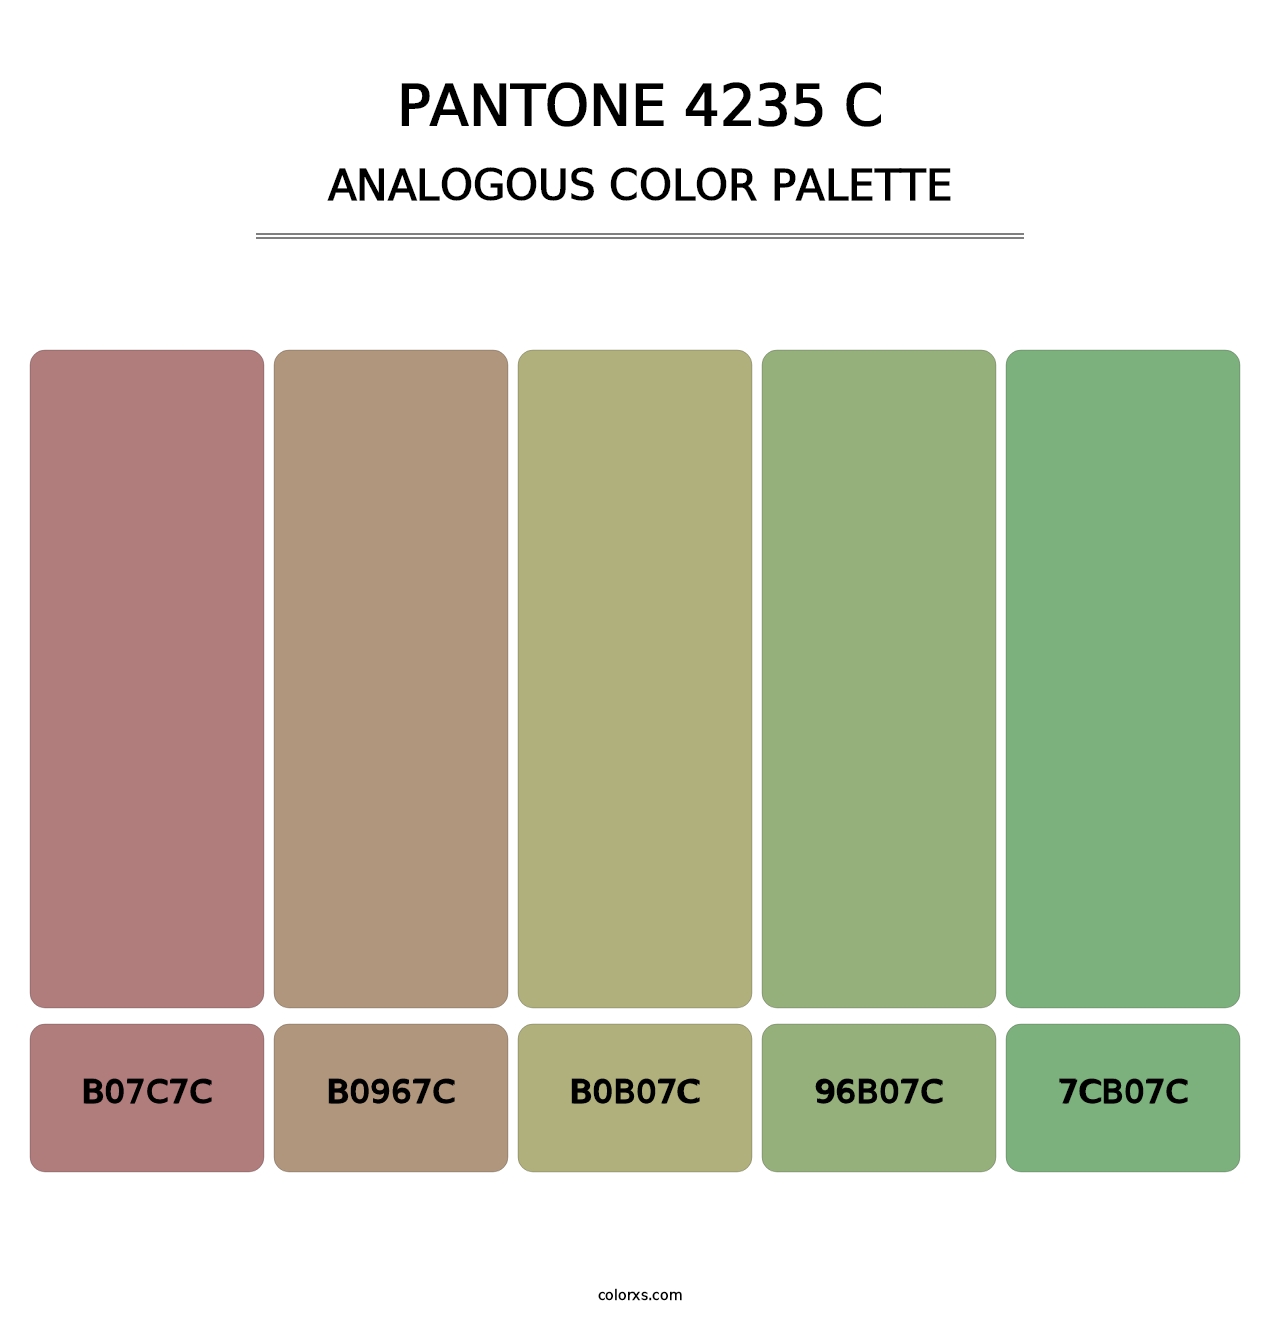 PANTONE 4235 C - Analogous Color Palette